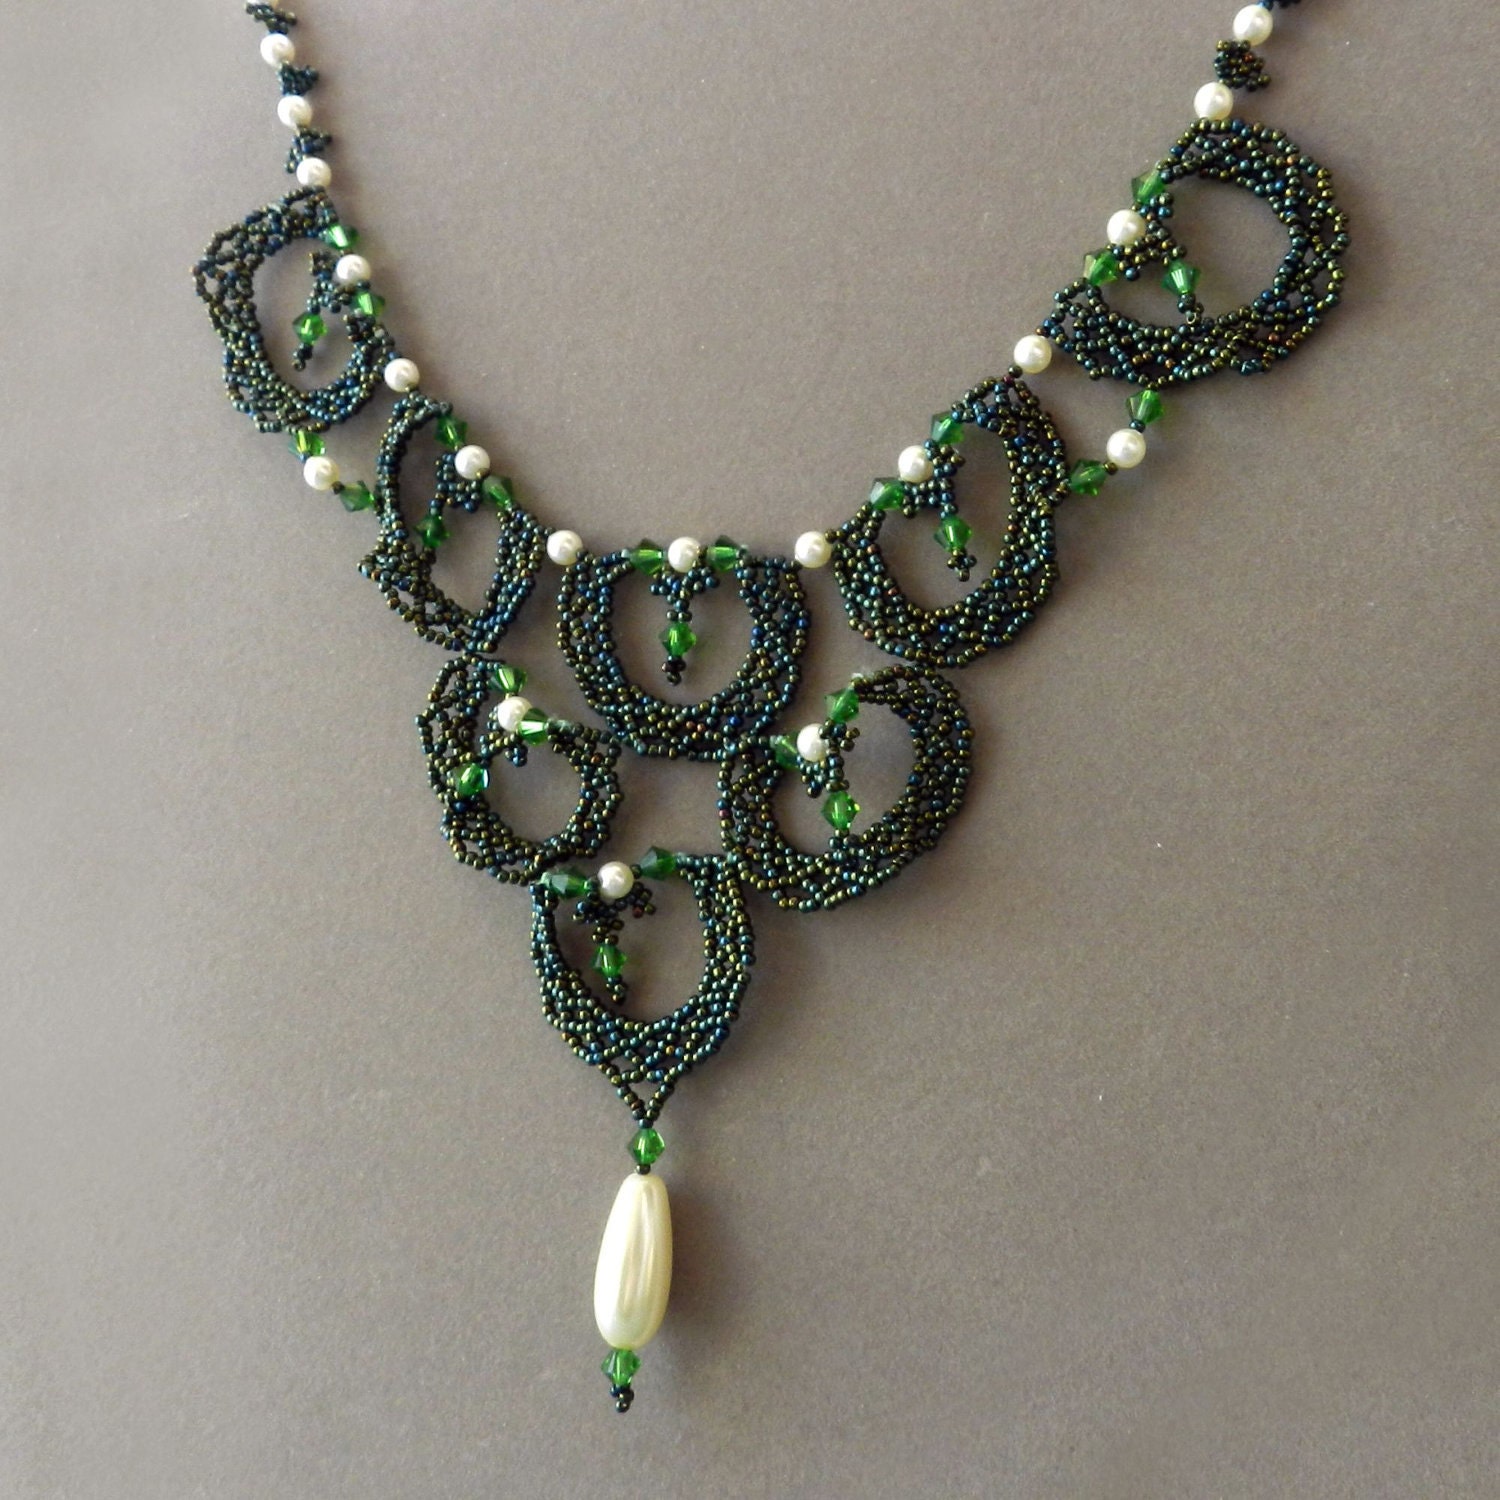 Beadweaving Green Renaissance Style Necklace - AlbinaRose